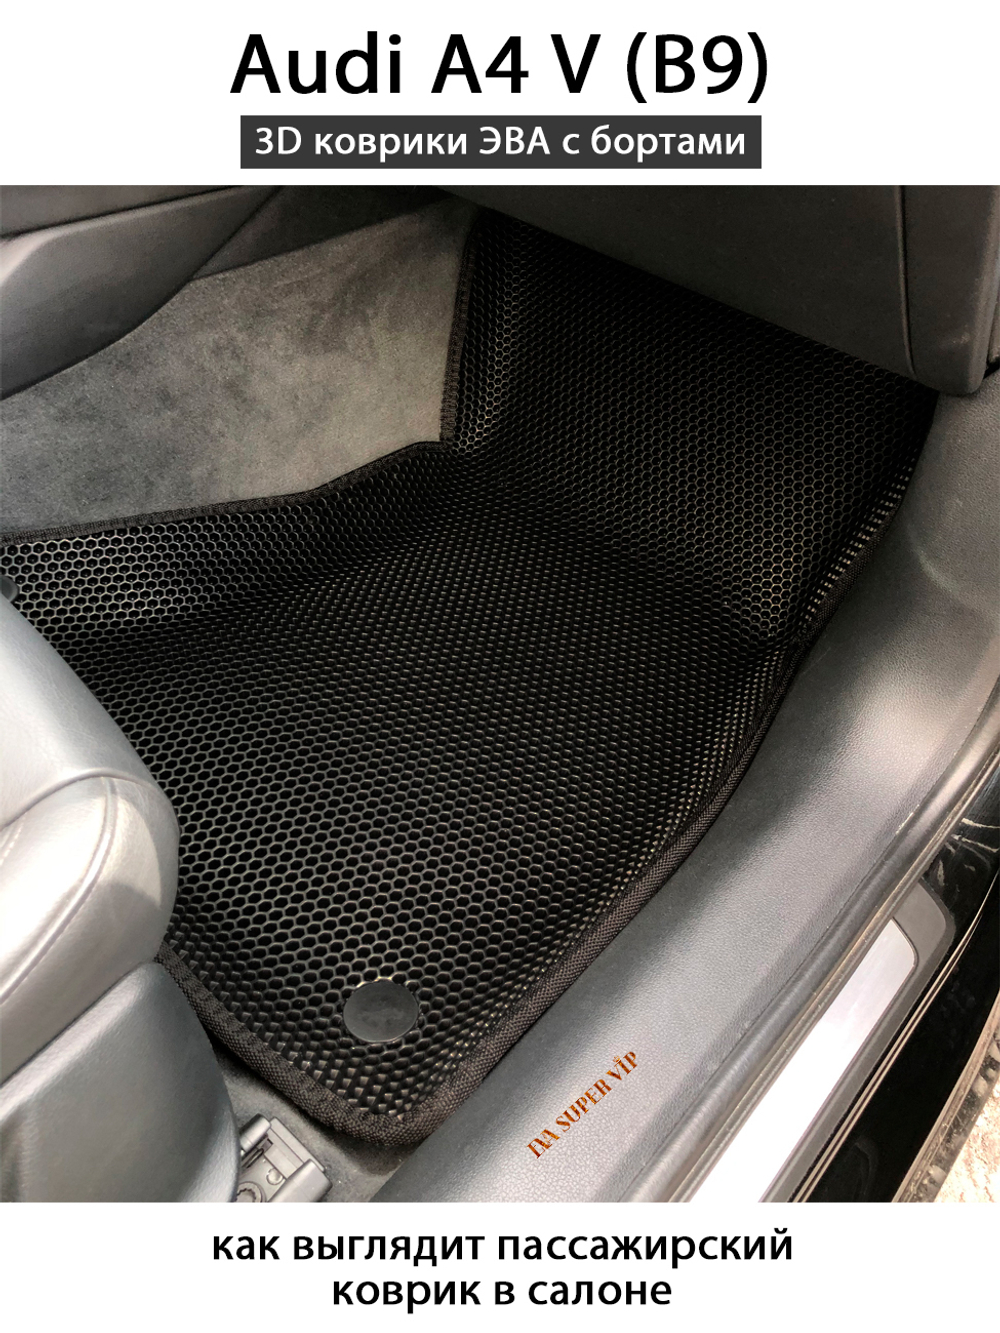 коврики в салоне для Audi A4 V B9 из eva материала от supervip